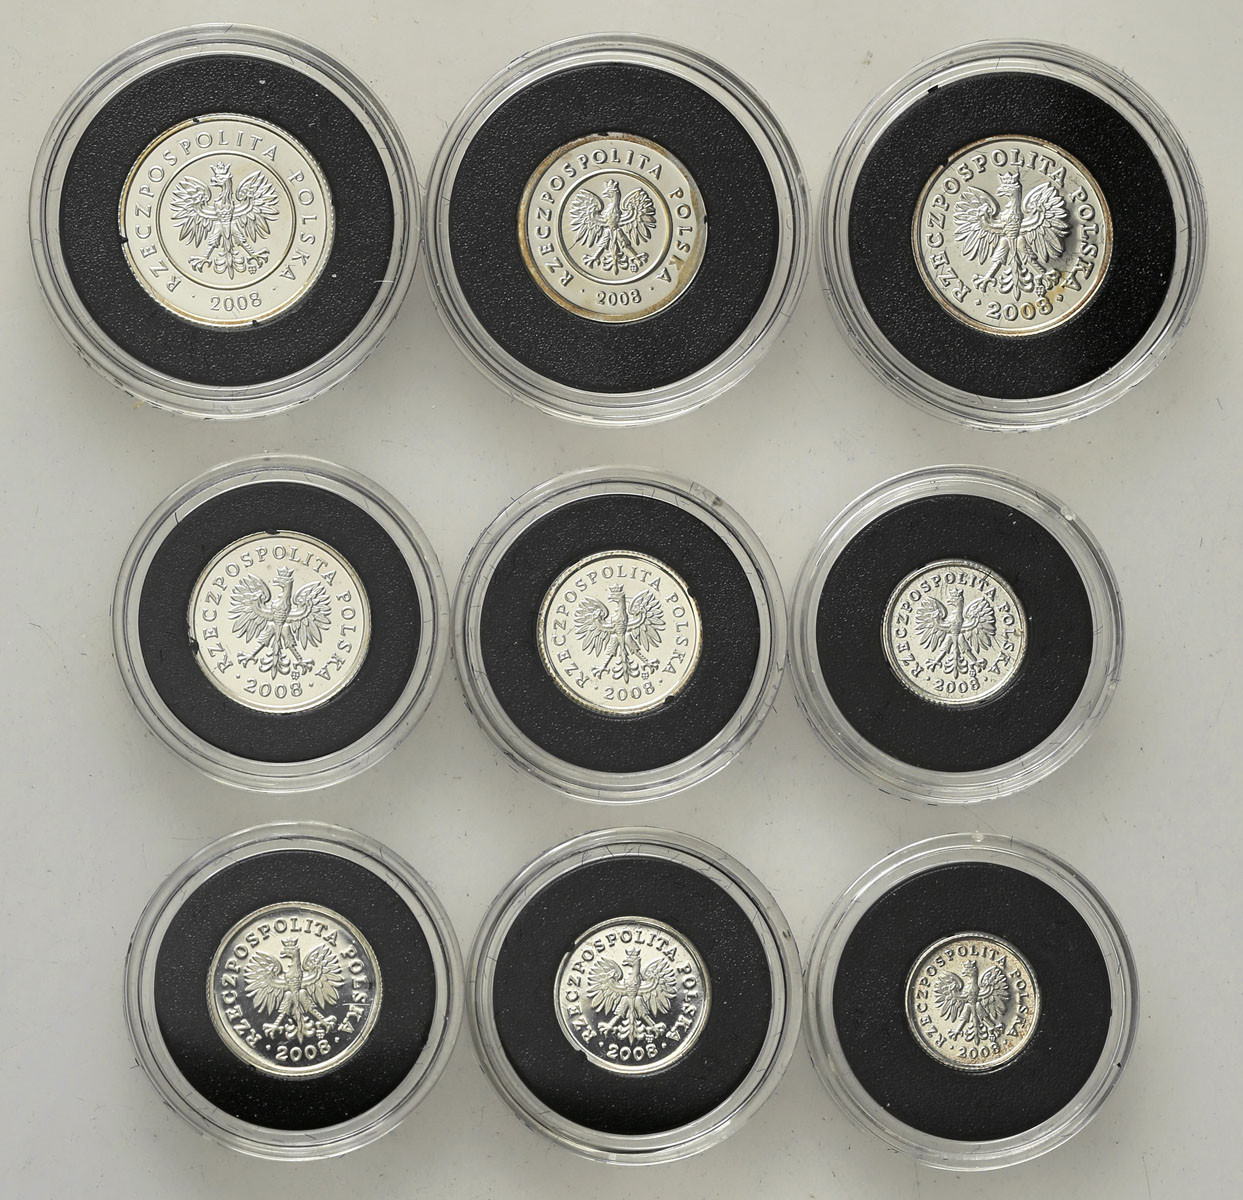 III RP. Miniatury polskich monet obiegowych 1 grosz do 5 złotych 2008, zestaw SREBRNY, 9sztuk